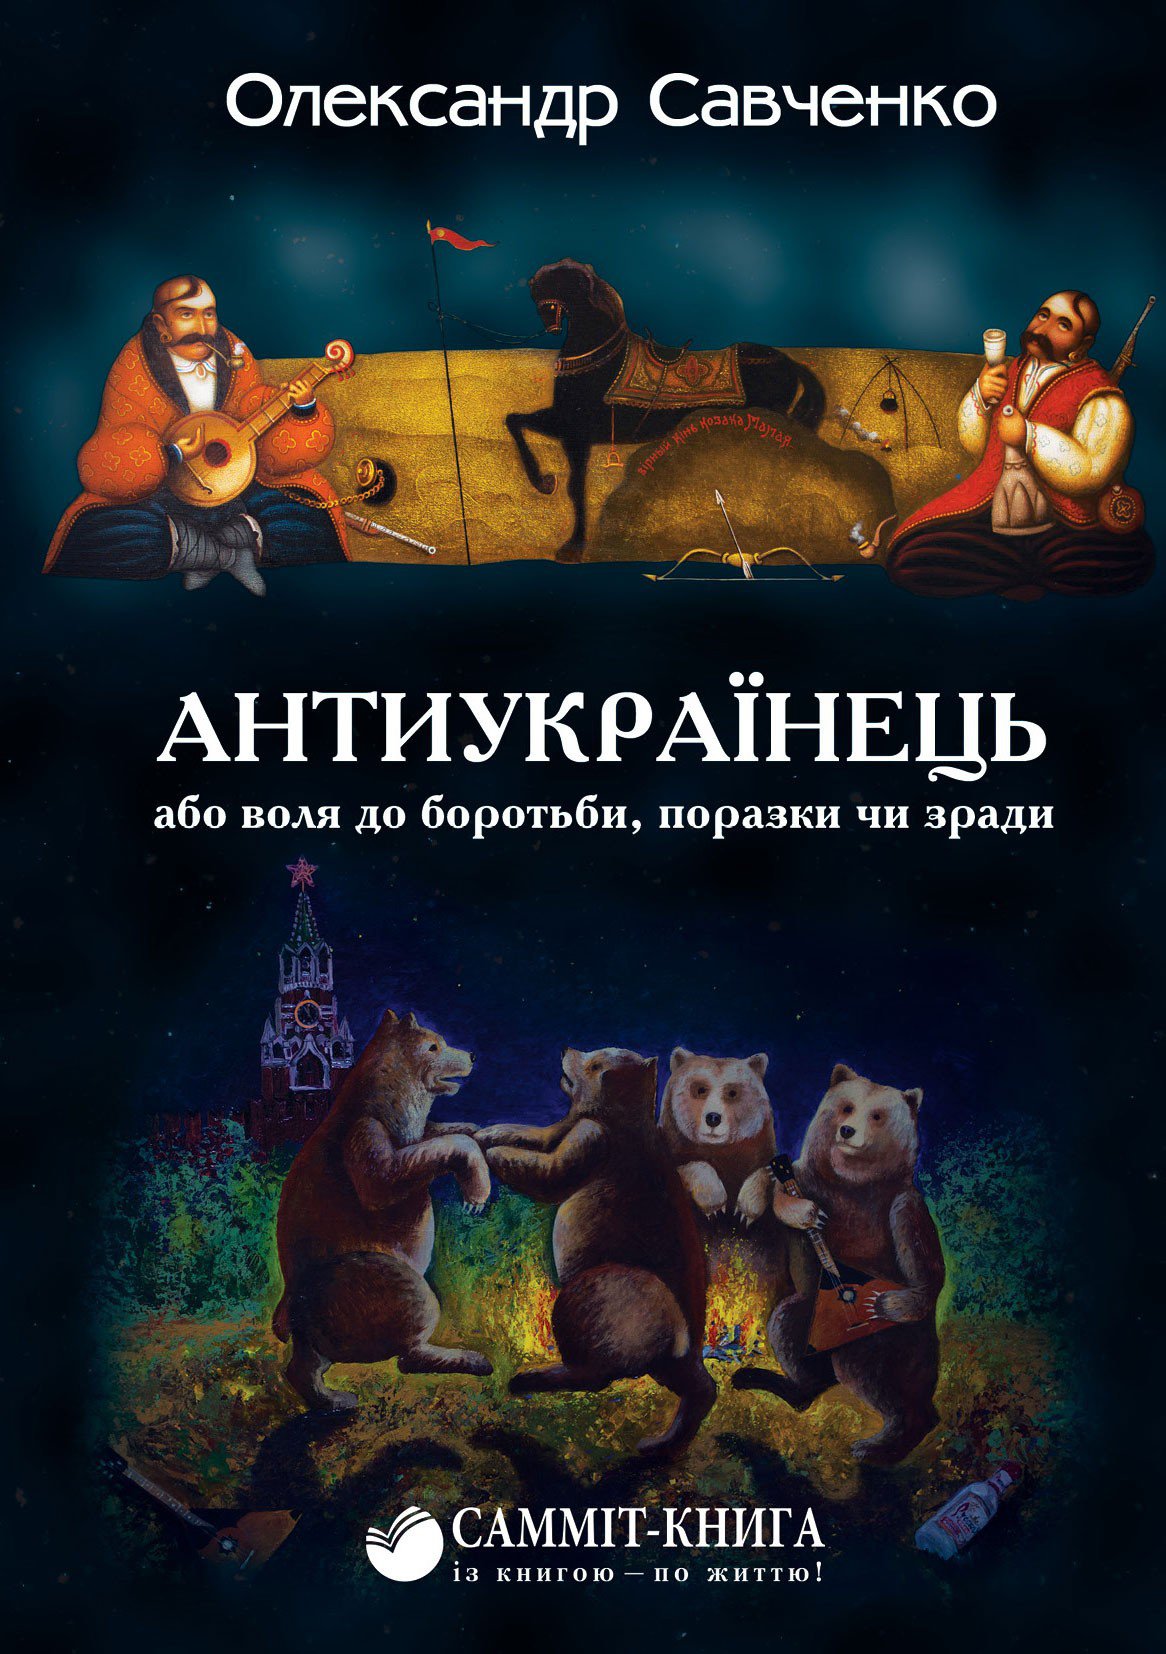 Антиукраїнець Олександра Савченка - настільна книга президента